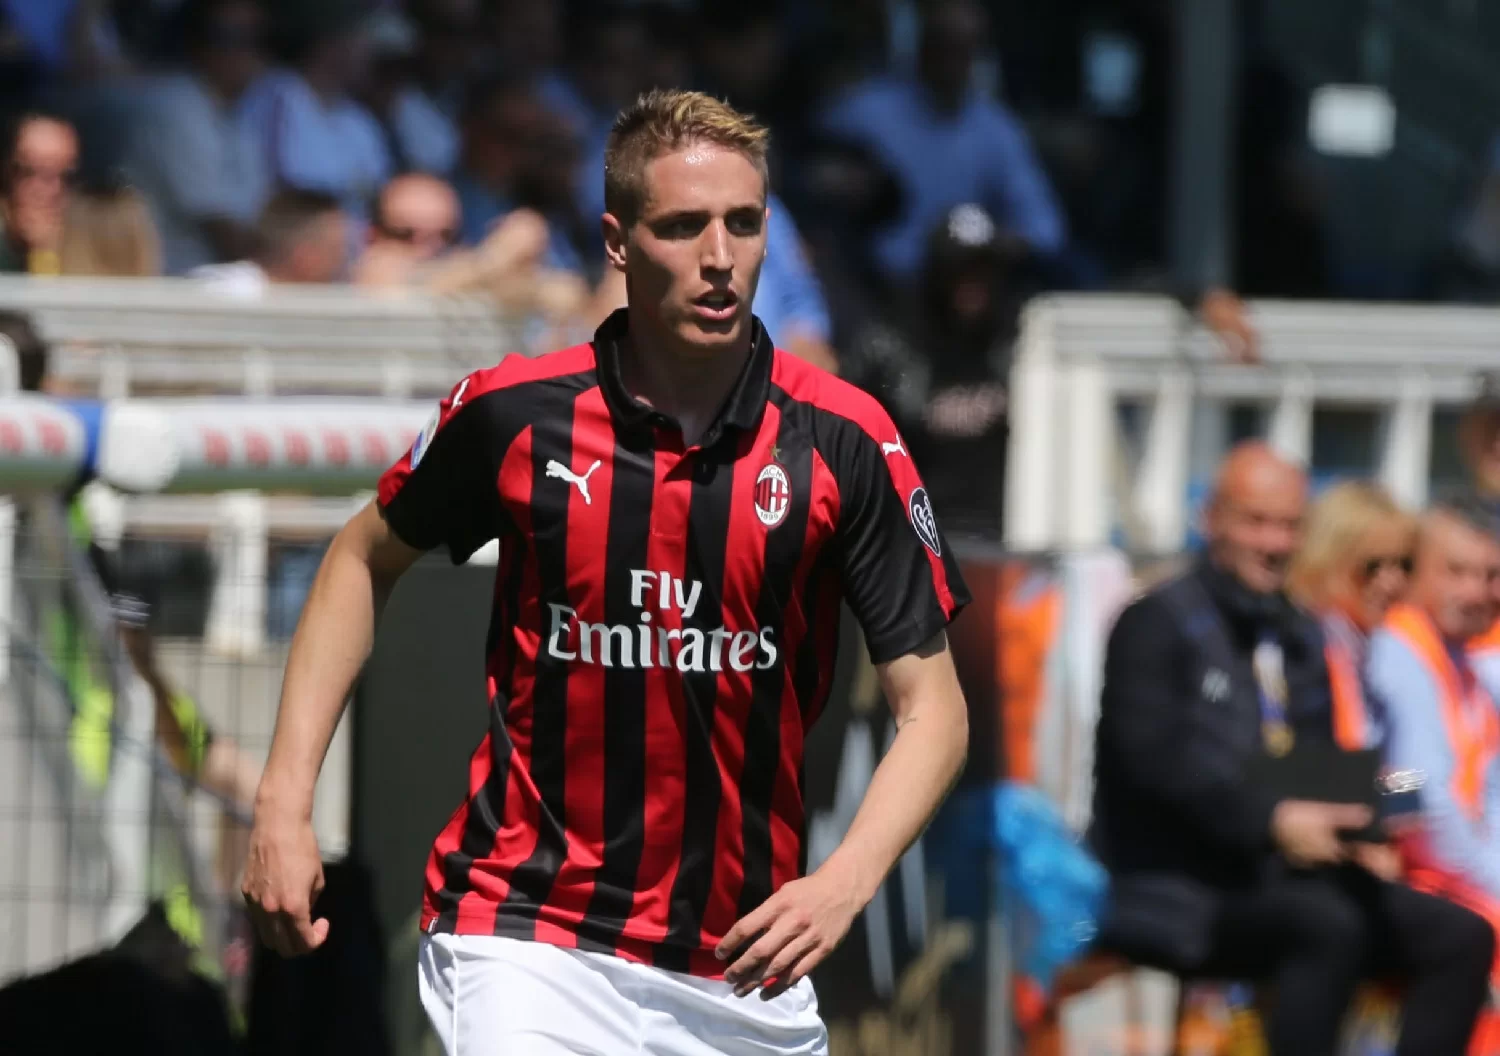 Calciomercato Milan – Conti vedrà Maldini per ribadirgli di voler restare